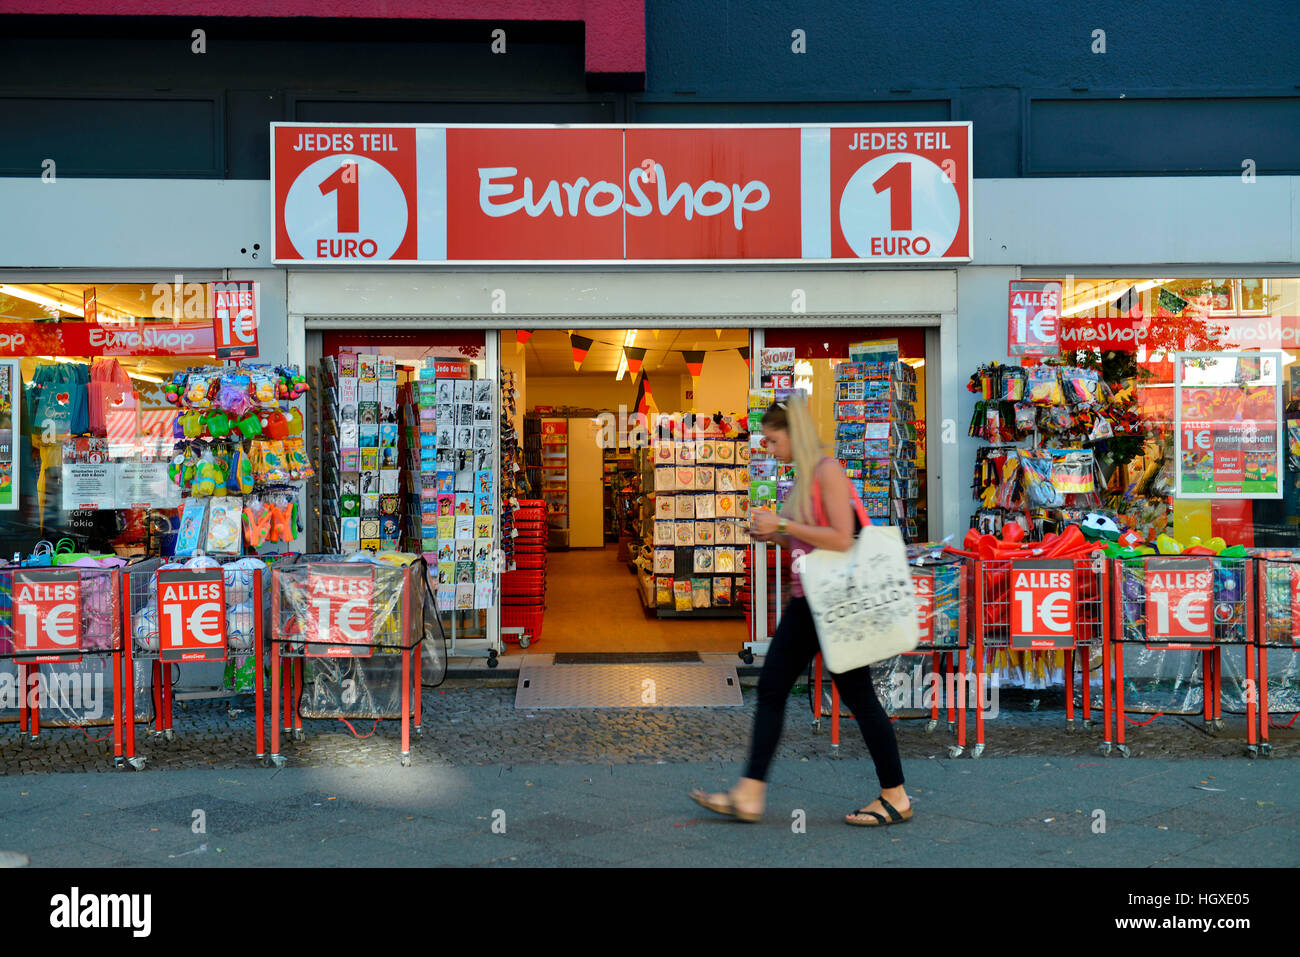 1 euro shop immagini e fotografie stock ad alta risoluzione - Alamy